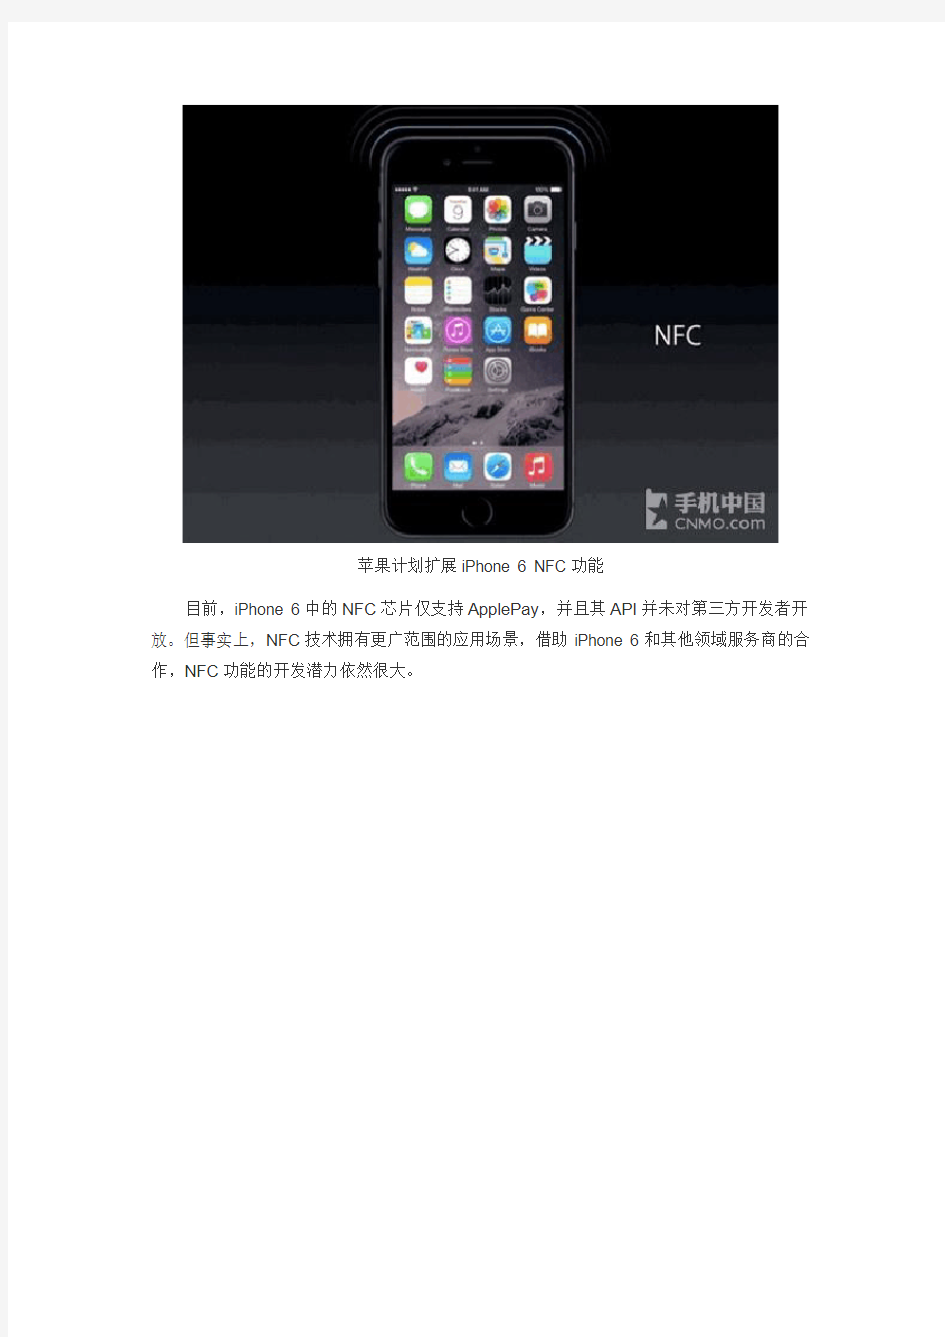 瞄准公交系统 iPhone 6 NFC功能将扩展